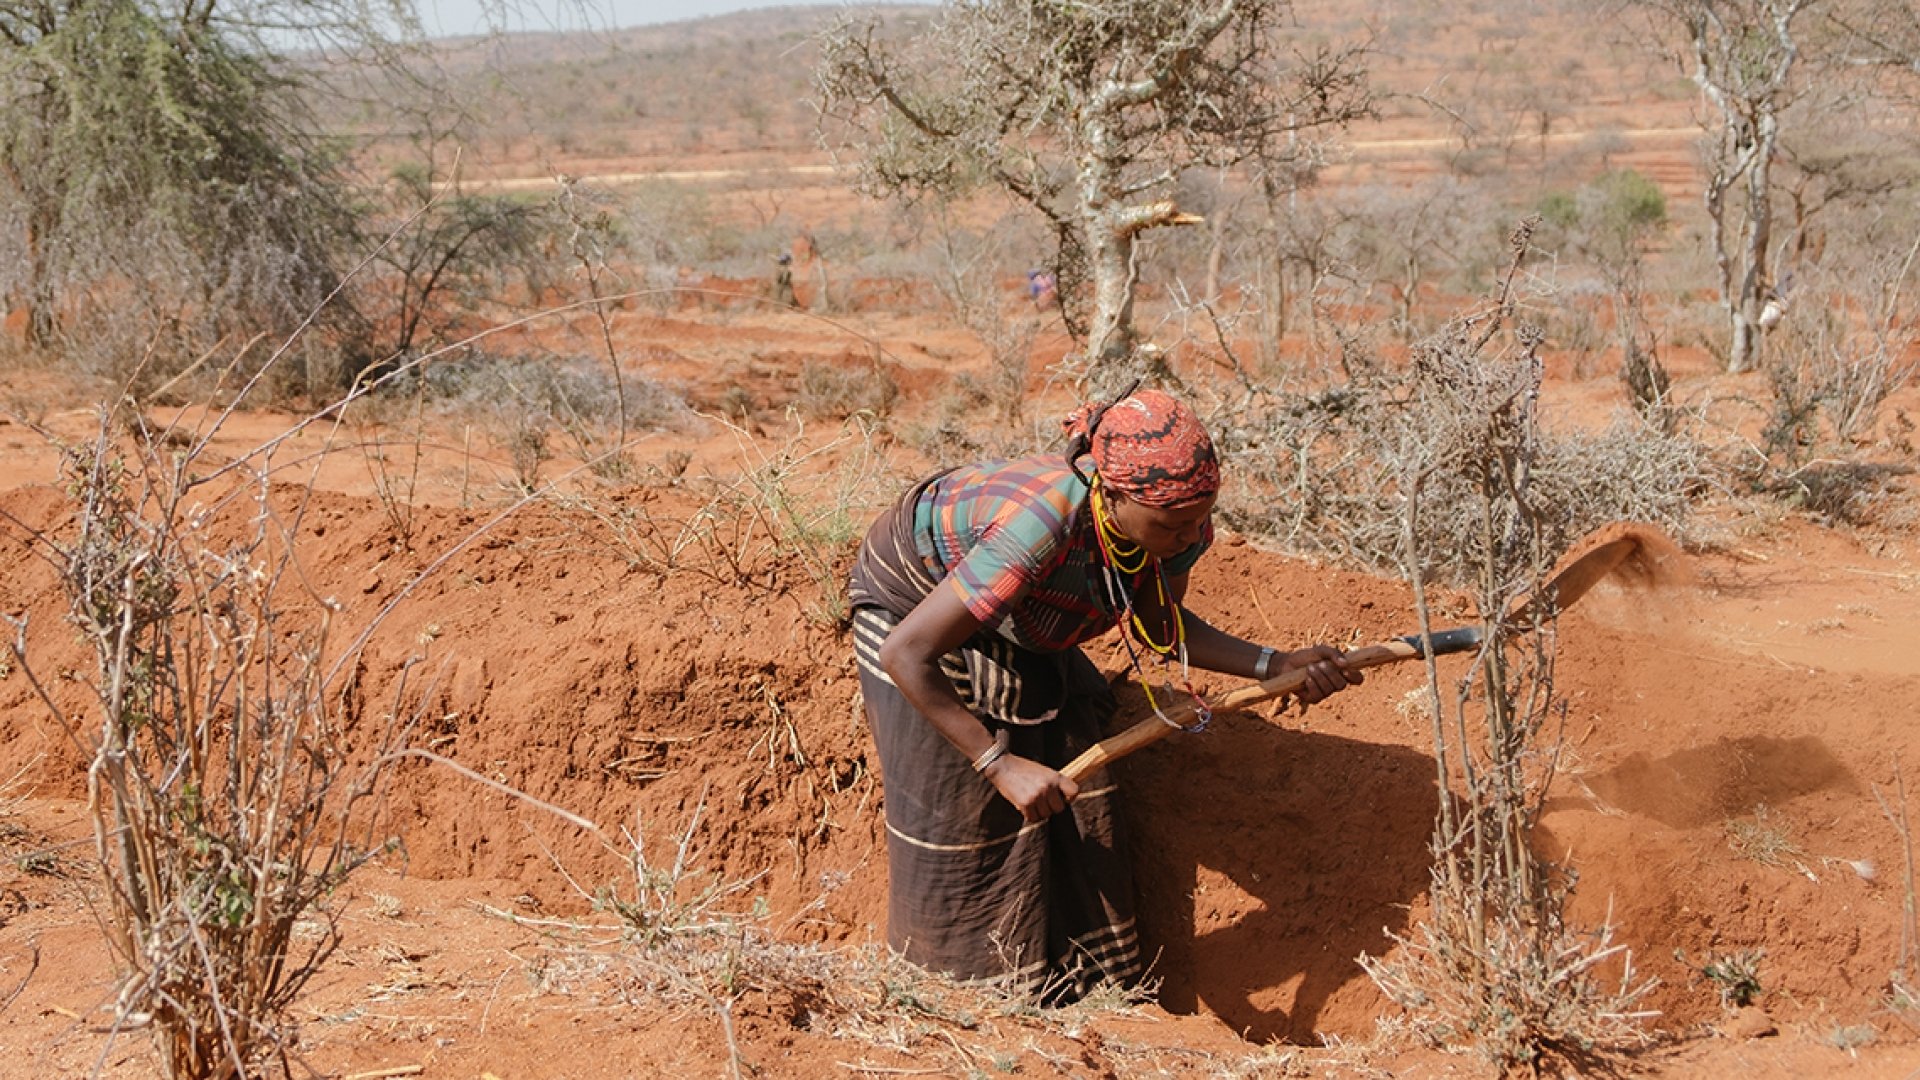 Die Menschen in Äthiopien leiden unter einer katastrophalen Dürre